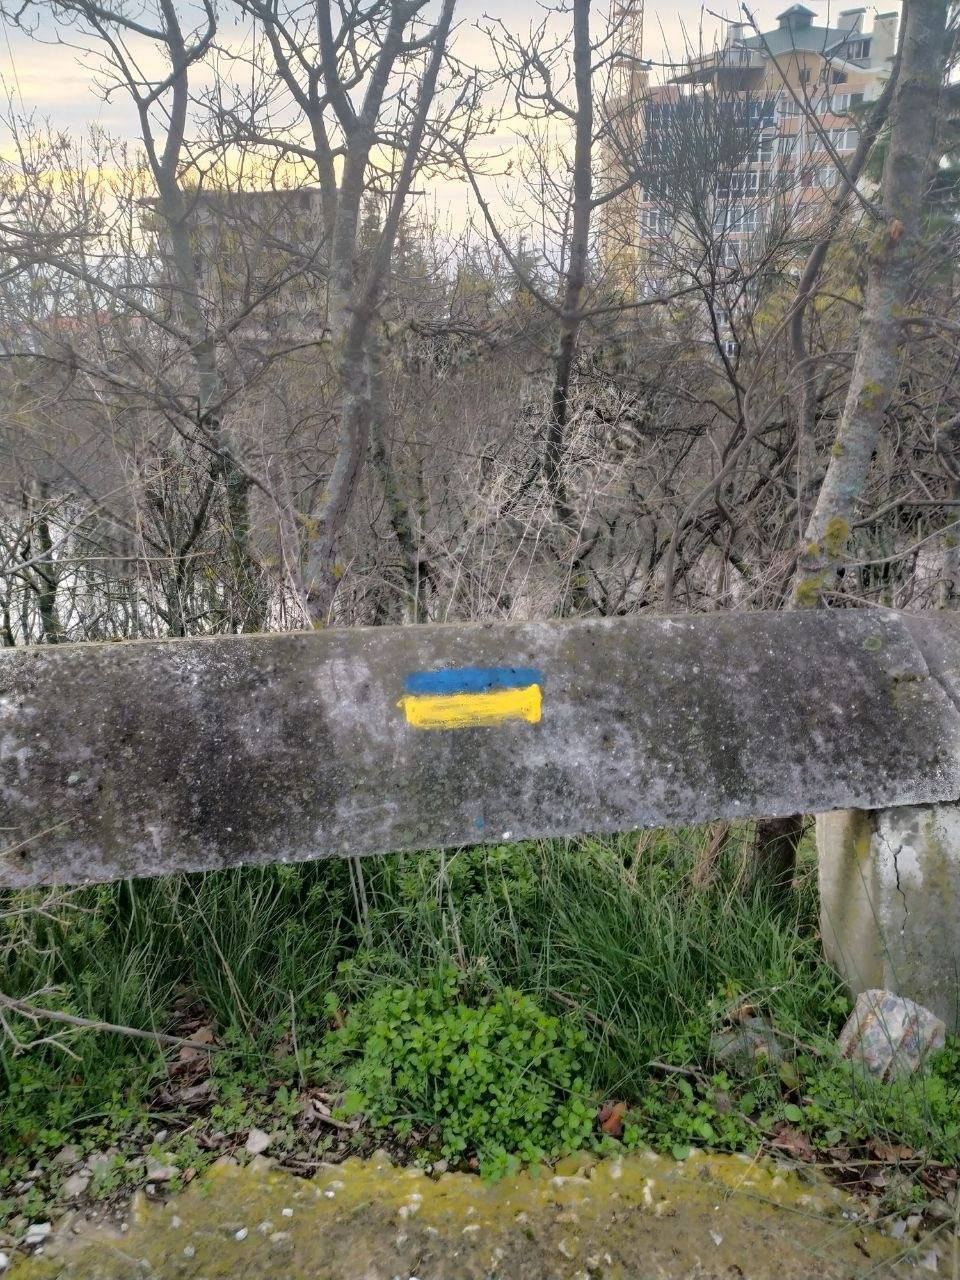 "Придет время – виновные ответят": в Крыму патриоты устроили смелую акцию и сделали предупреждение оккупантам. Фото и видео